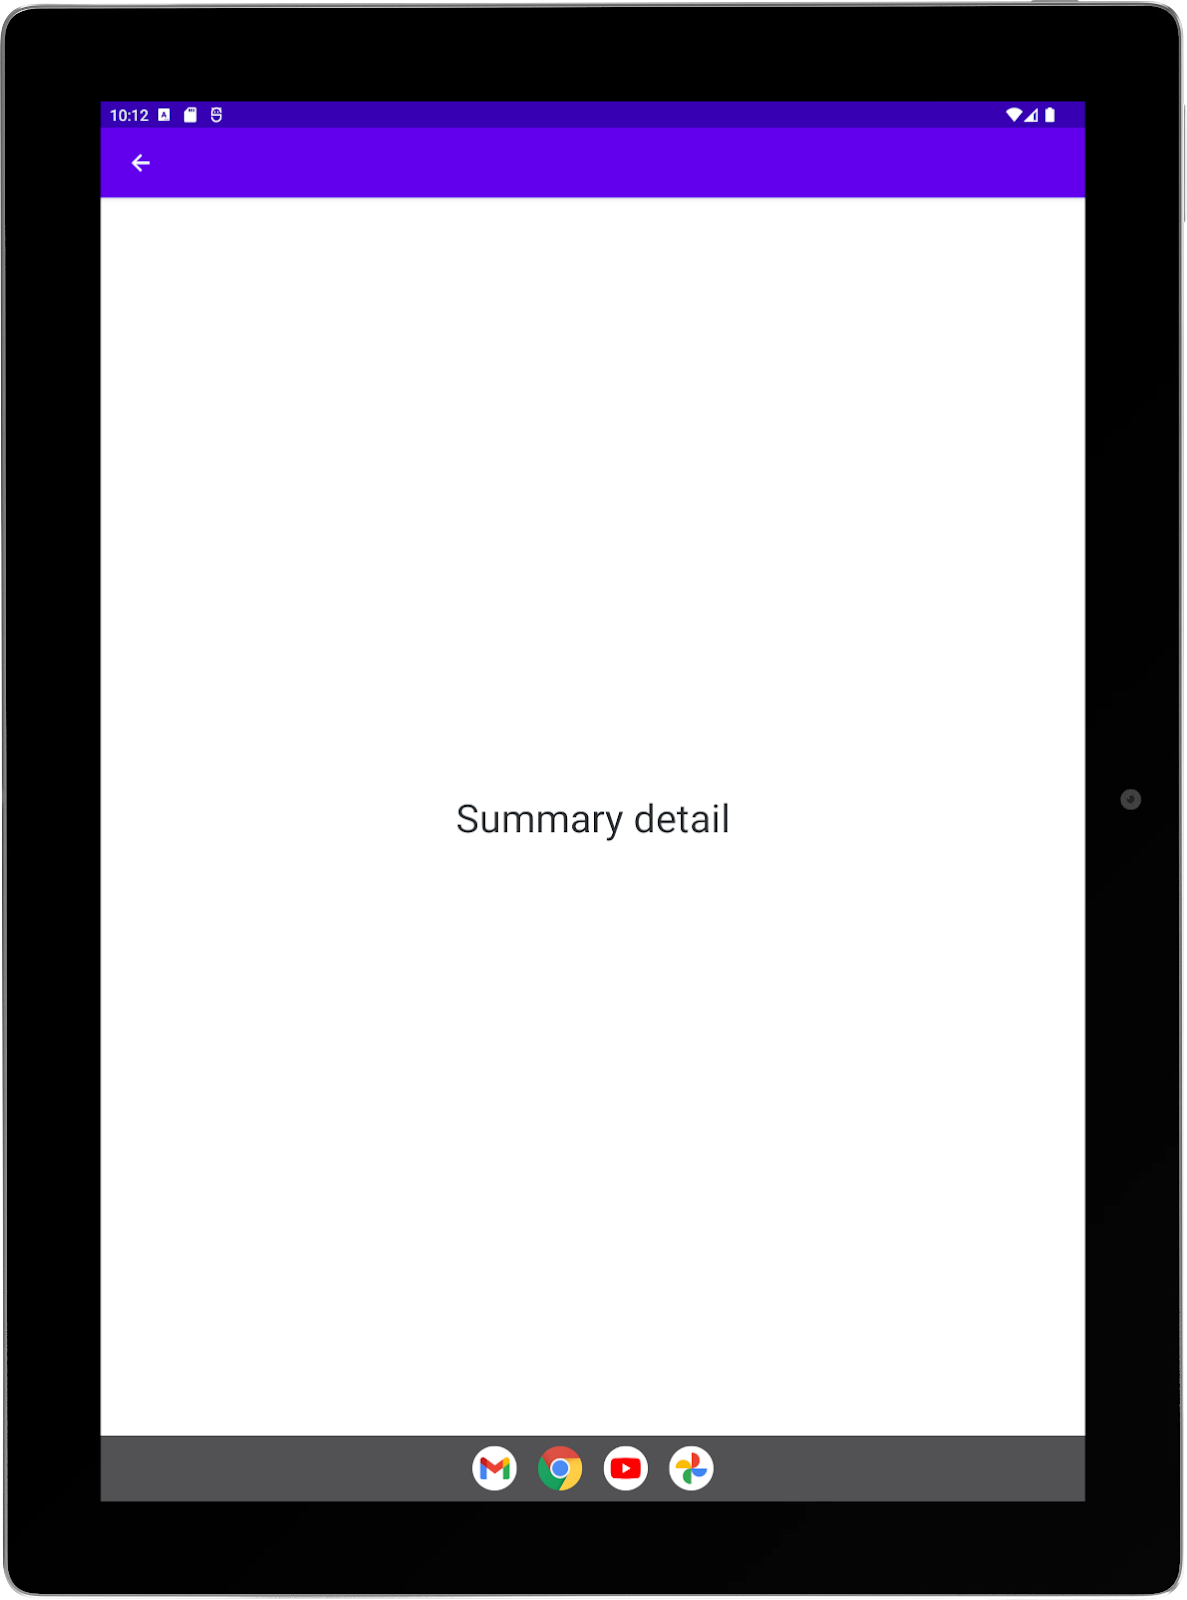 Tablet grande con la app de ejemplo ejecutándose en orientación vertical. Pantalla completa de la actividad de resumen.